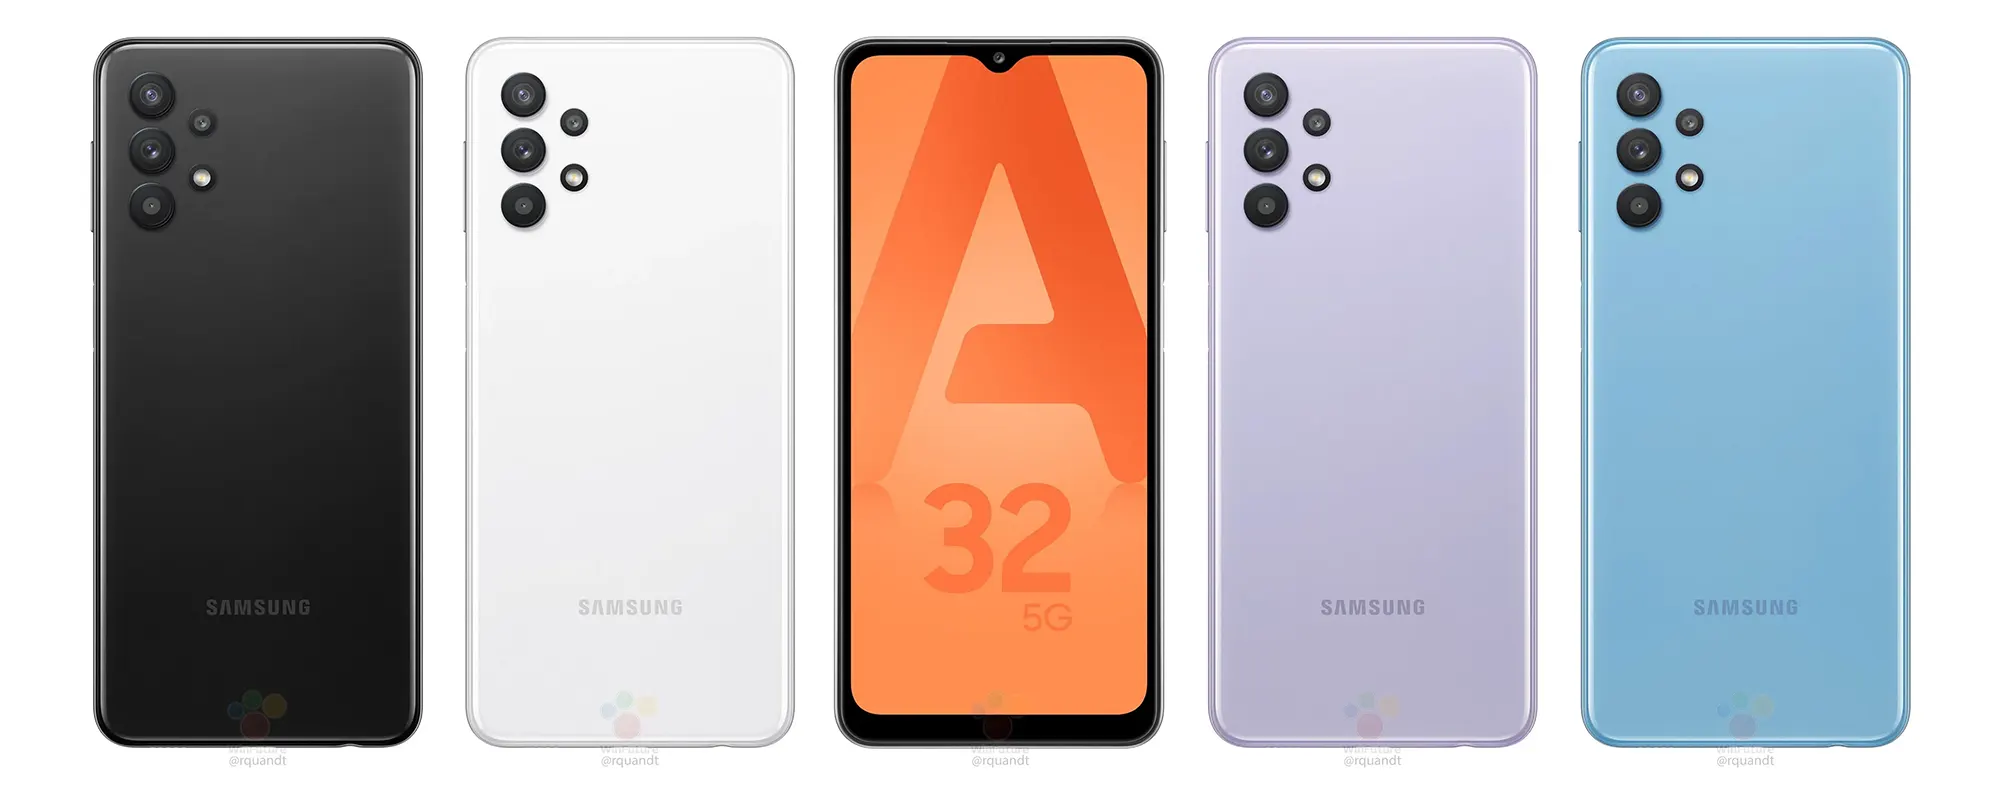 Galaxy A32 5G ra mắt:
Smartphone 5G giá rẻ nhất của Samsung với chip Dimensity
720, pin 5.000 mAh, giá 7,9 triệu đồng